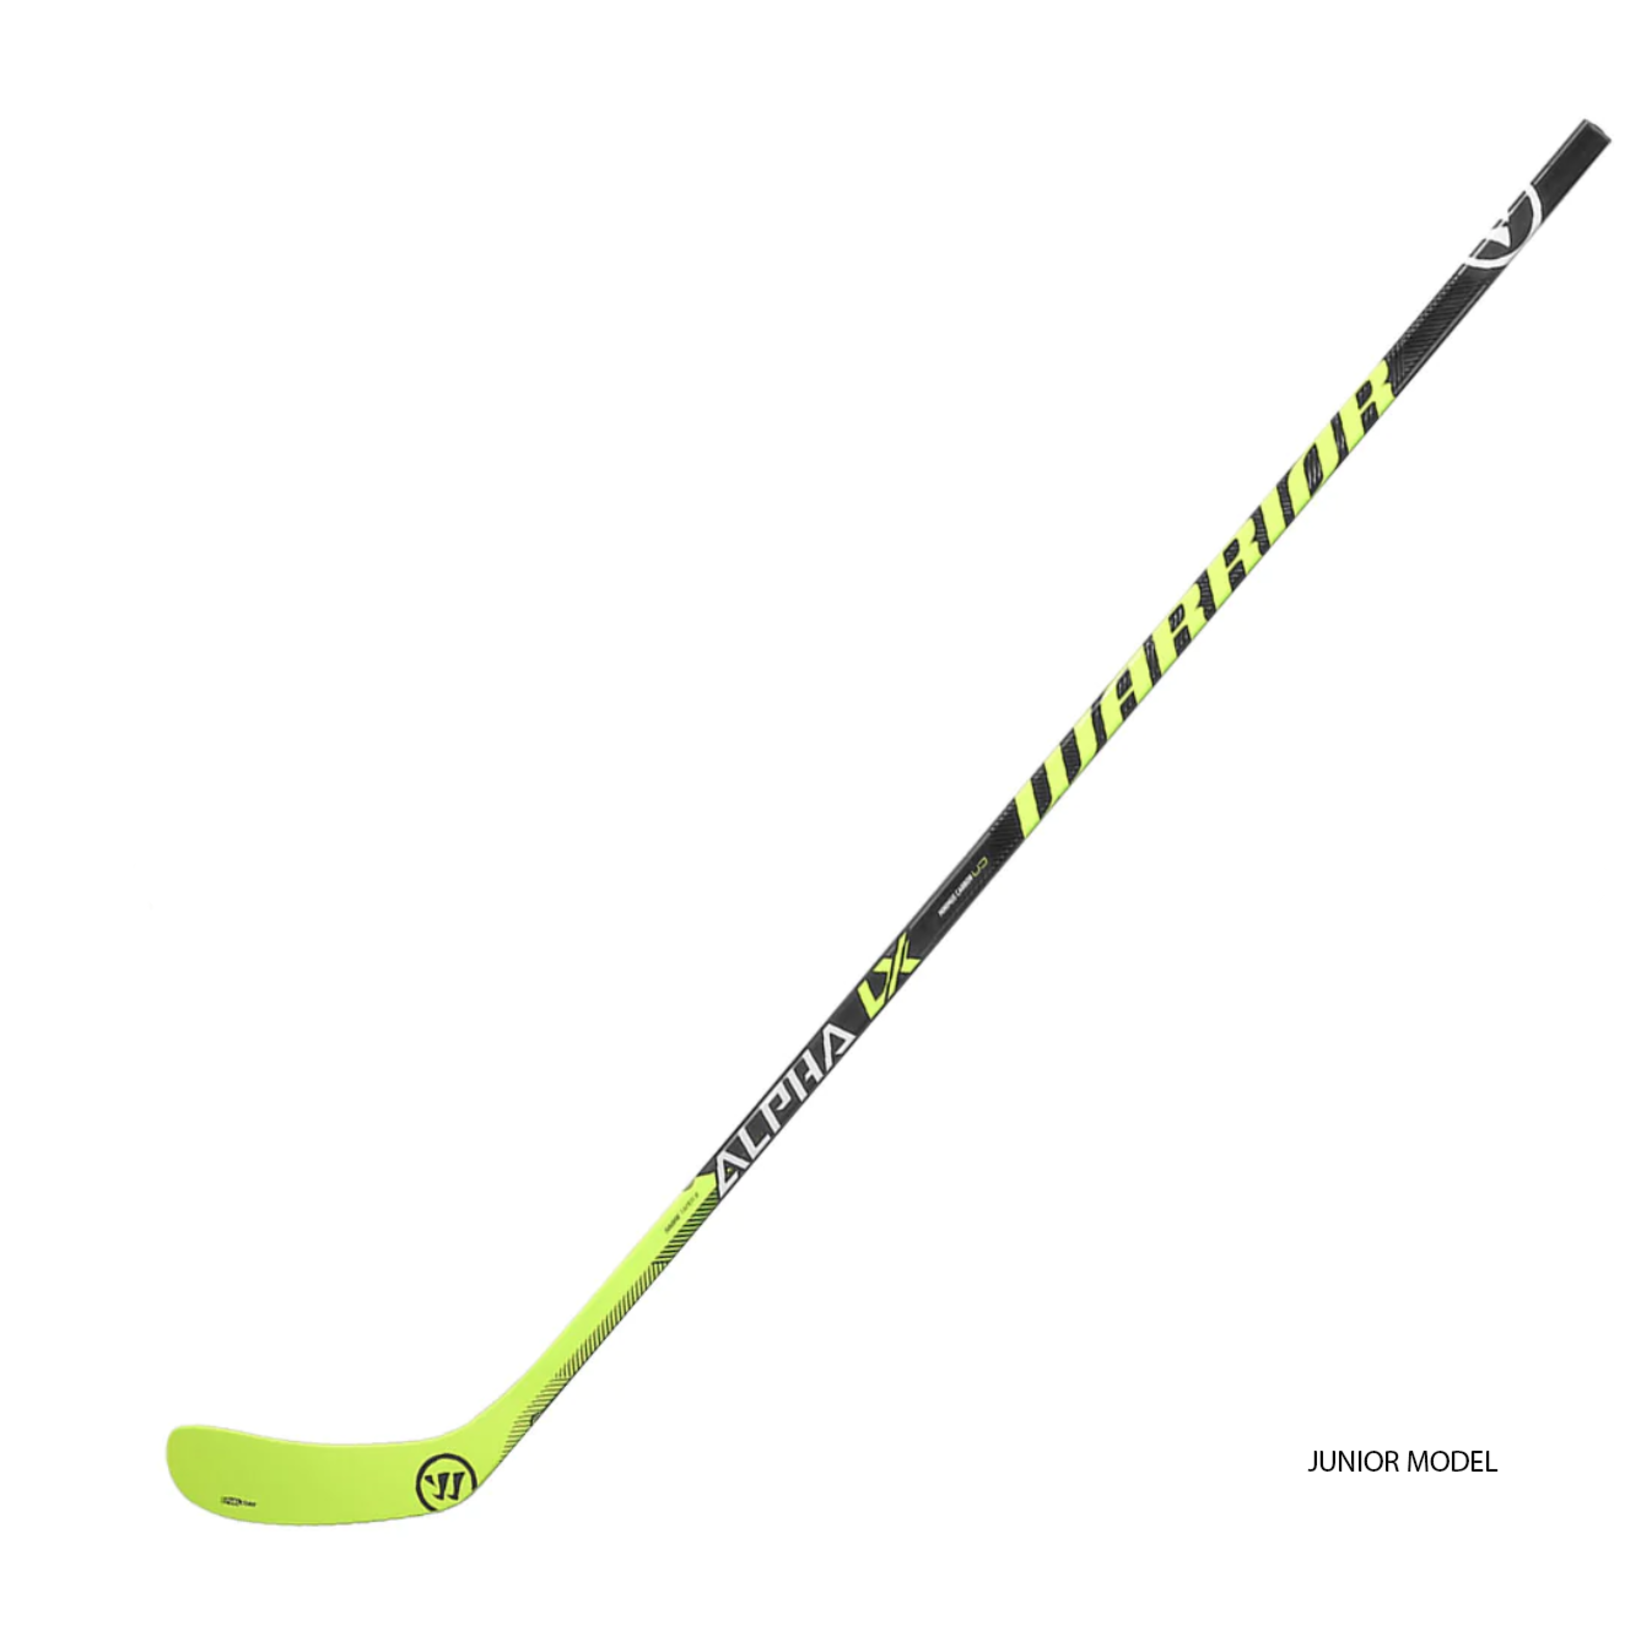 Warrior Hockey Player Sticks